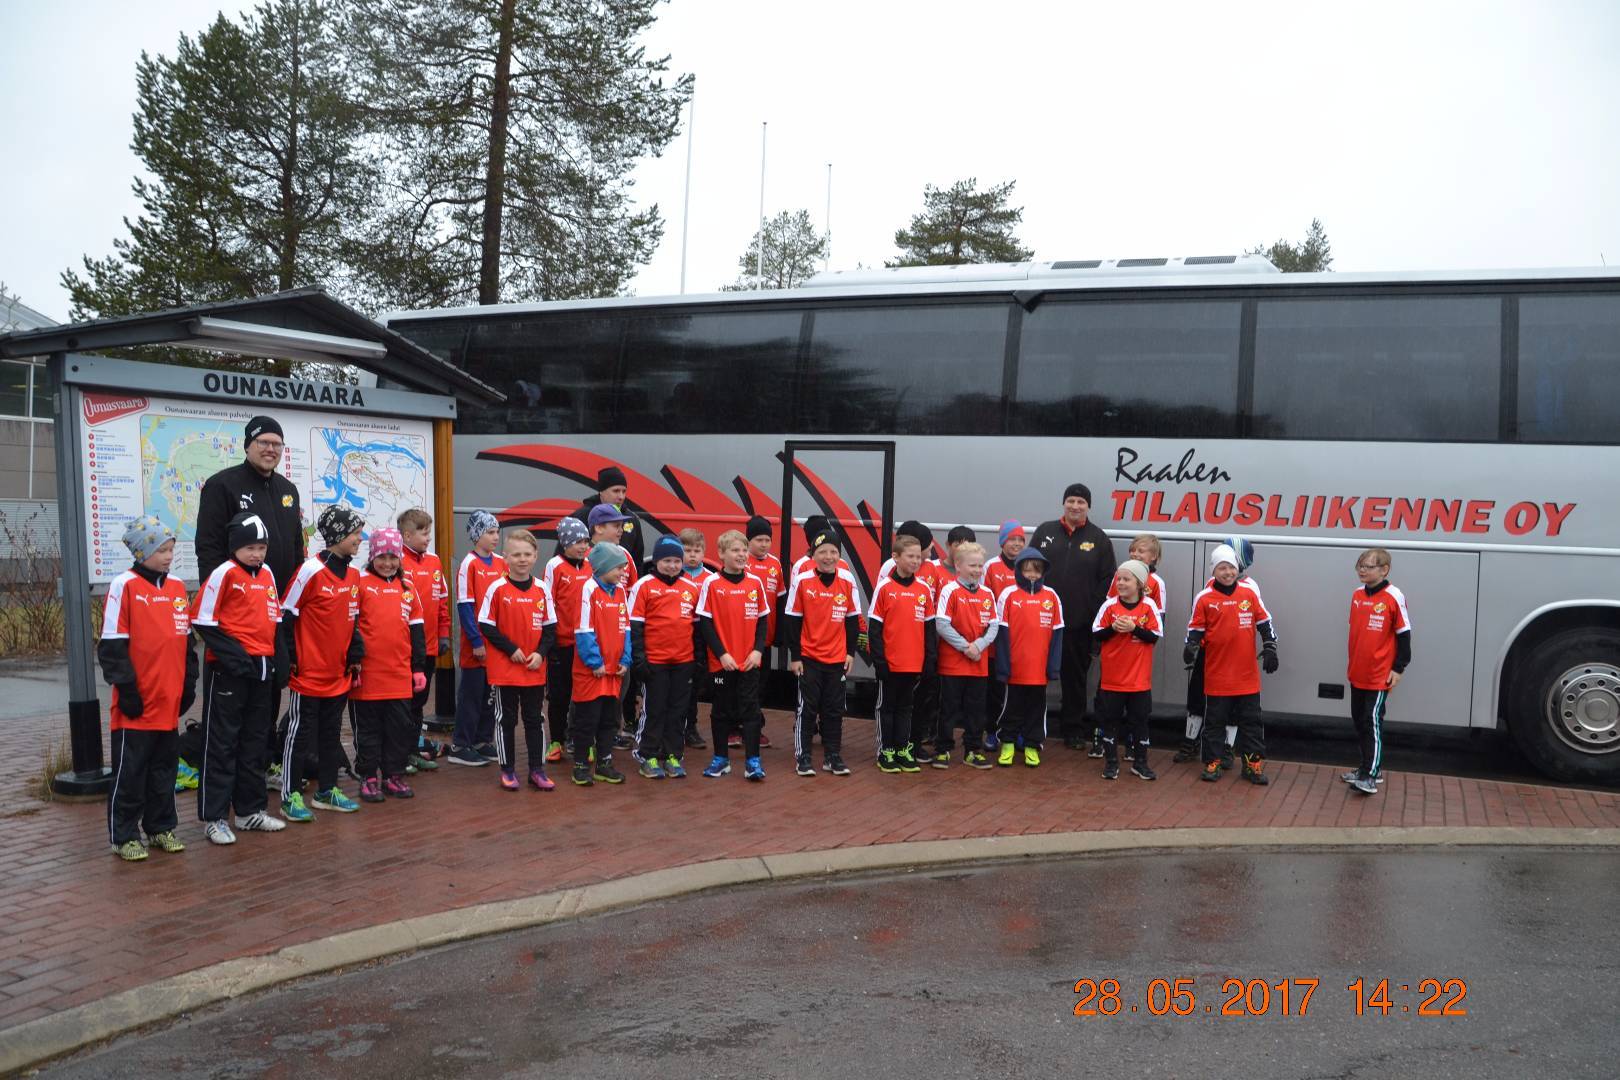 E10 Piirisarja jatkui Rovaniemellä järjestetyssä turnauksessa